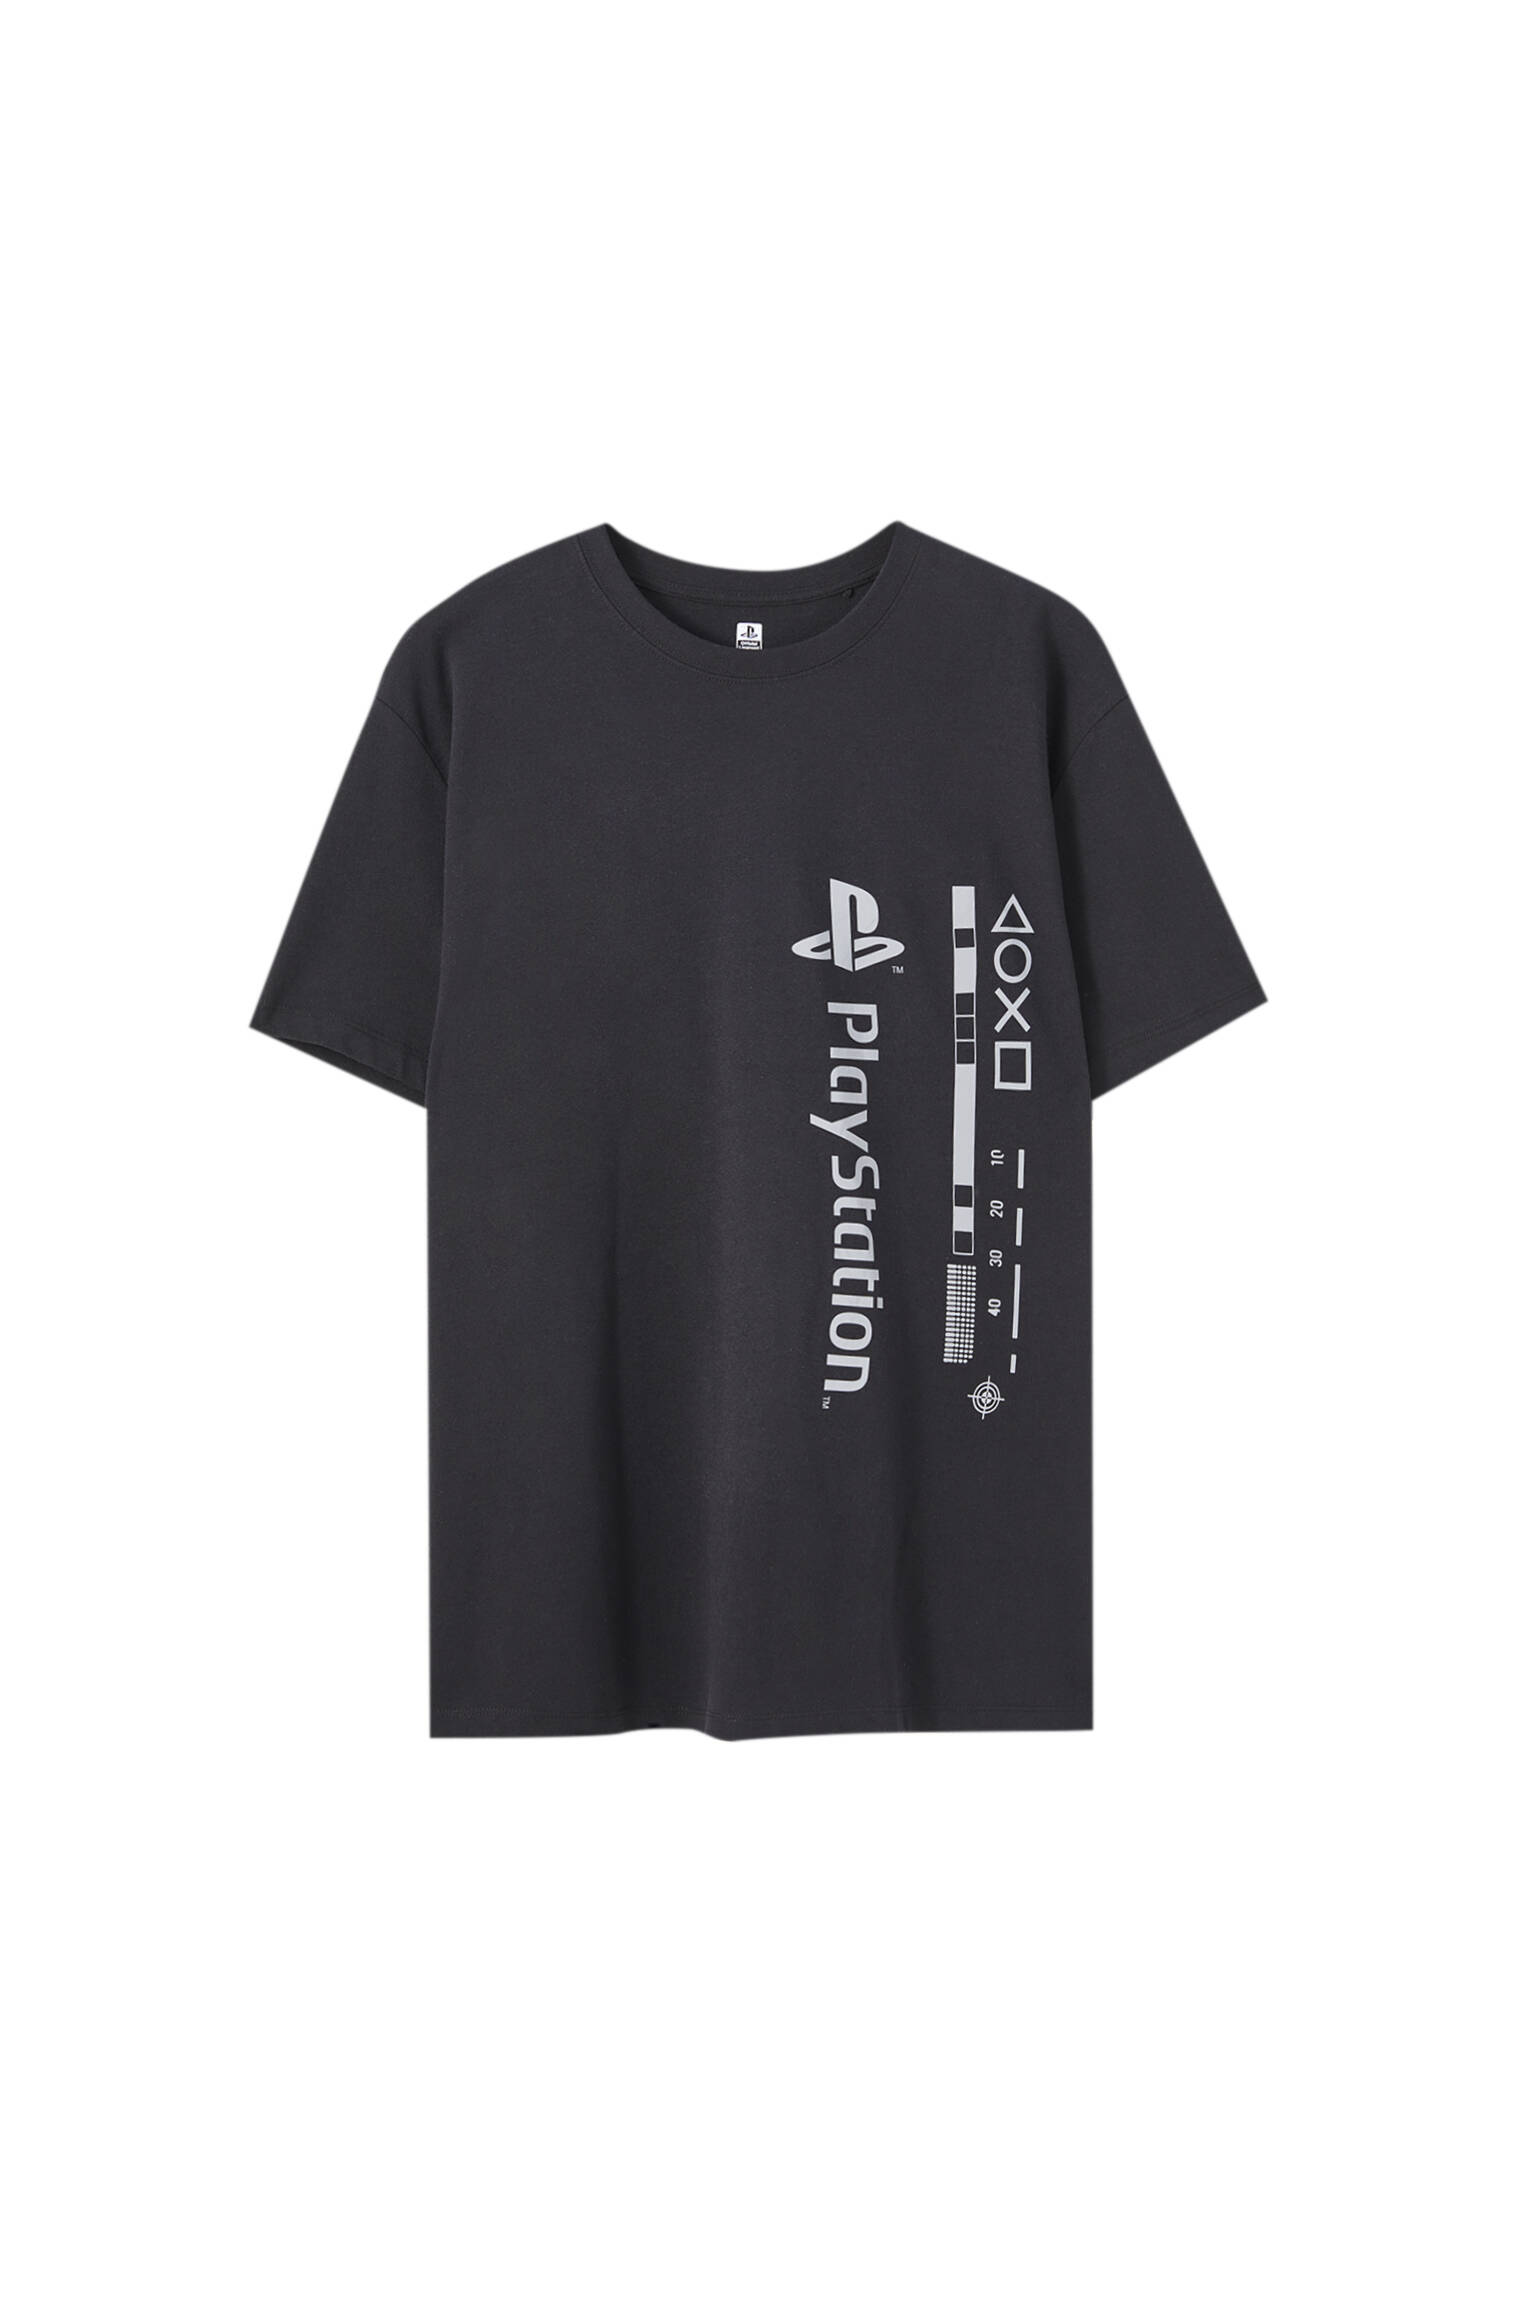 Pull&bear Homme T-shirt Noir En Coton Mélangé à Manches Courtes Et Col Rond, Avec Logo Playstation Contrastant. Noir M